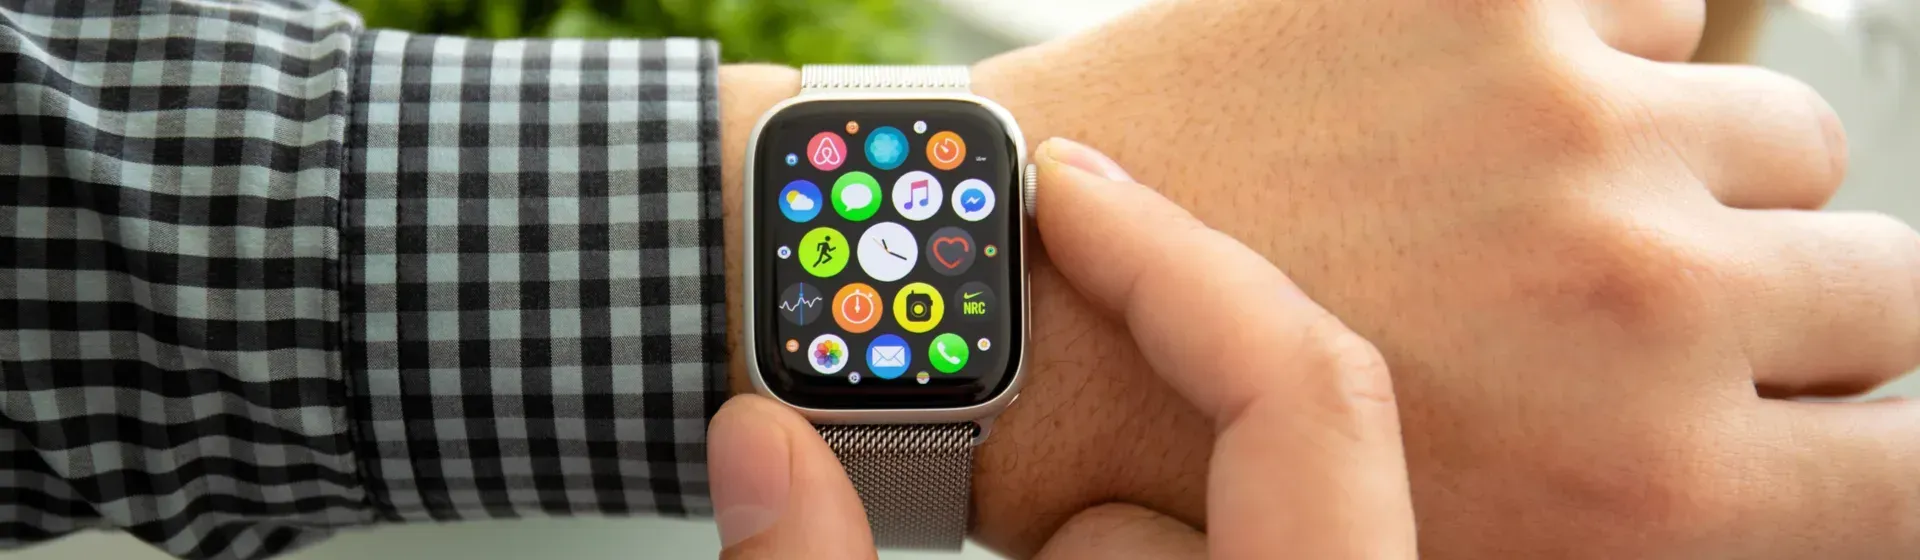 Foto de uma pessoa com o Apple Watch 6 no braço